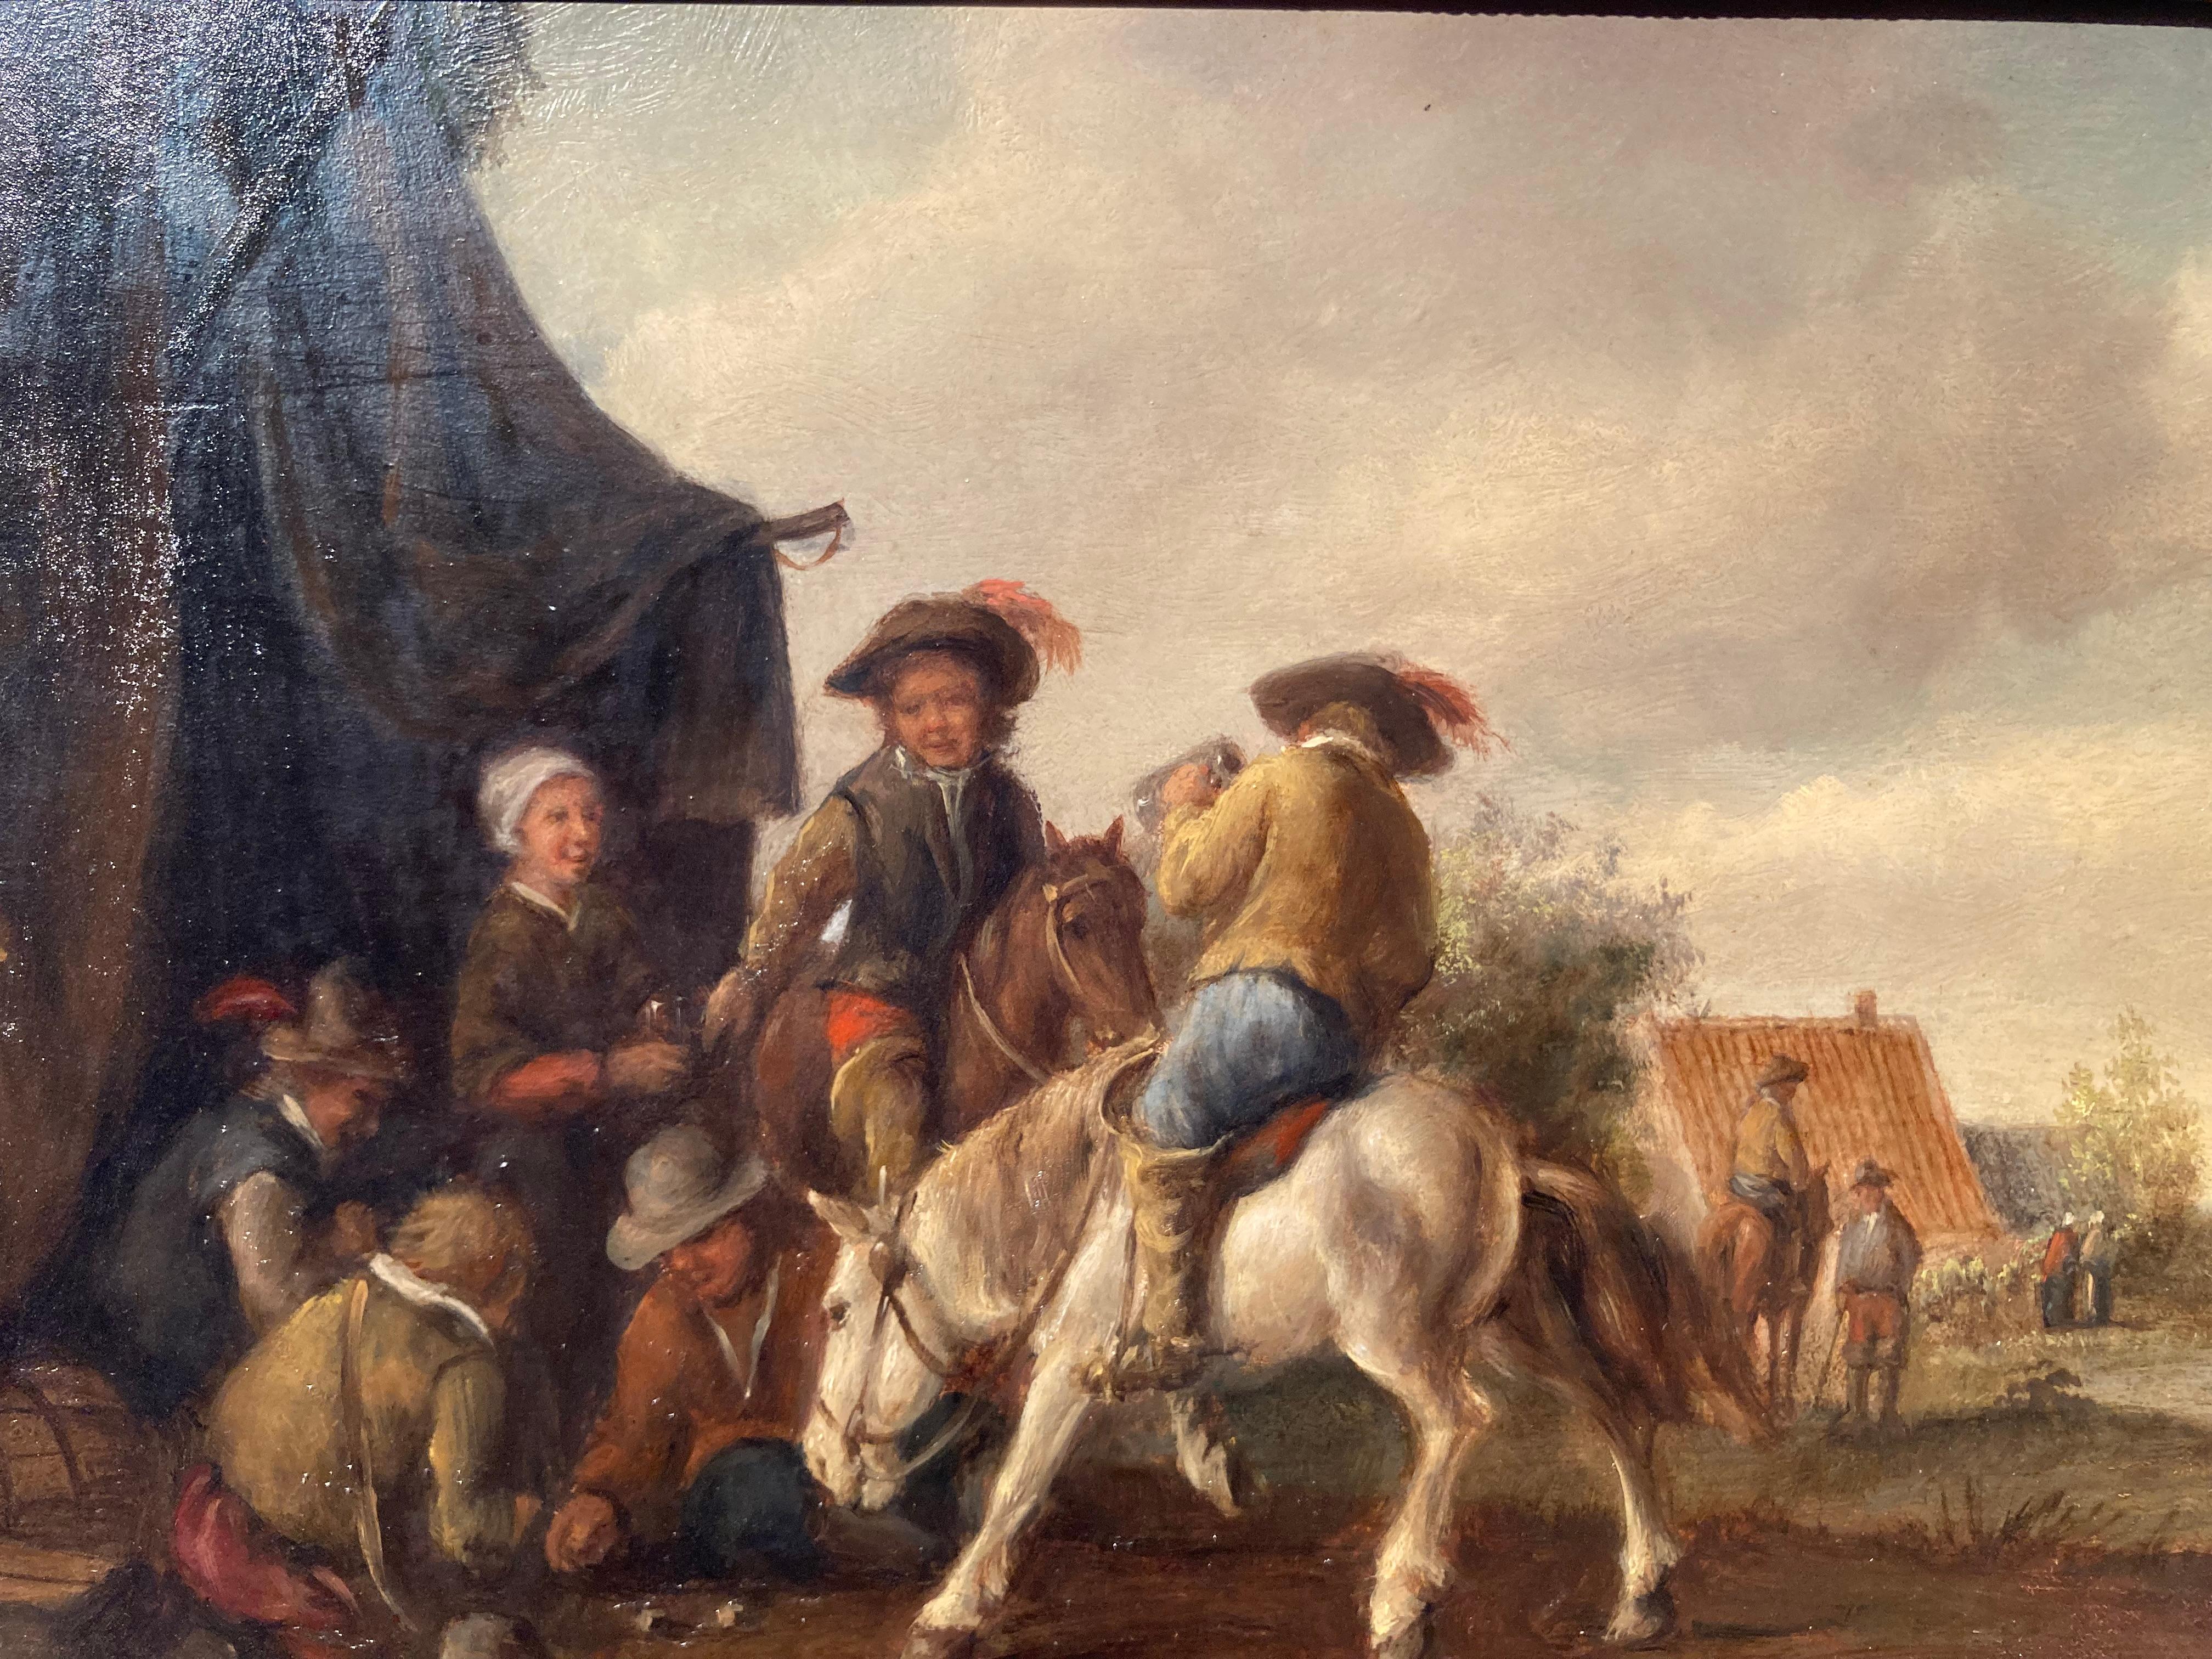 Kreis Wouwerman, Reiter von einem Zelt, Reiter mit Karten, niederländischer alter Meister – Painting von Philips Wouwerman